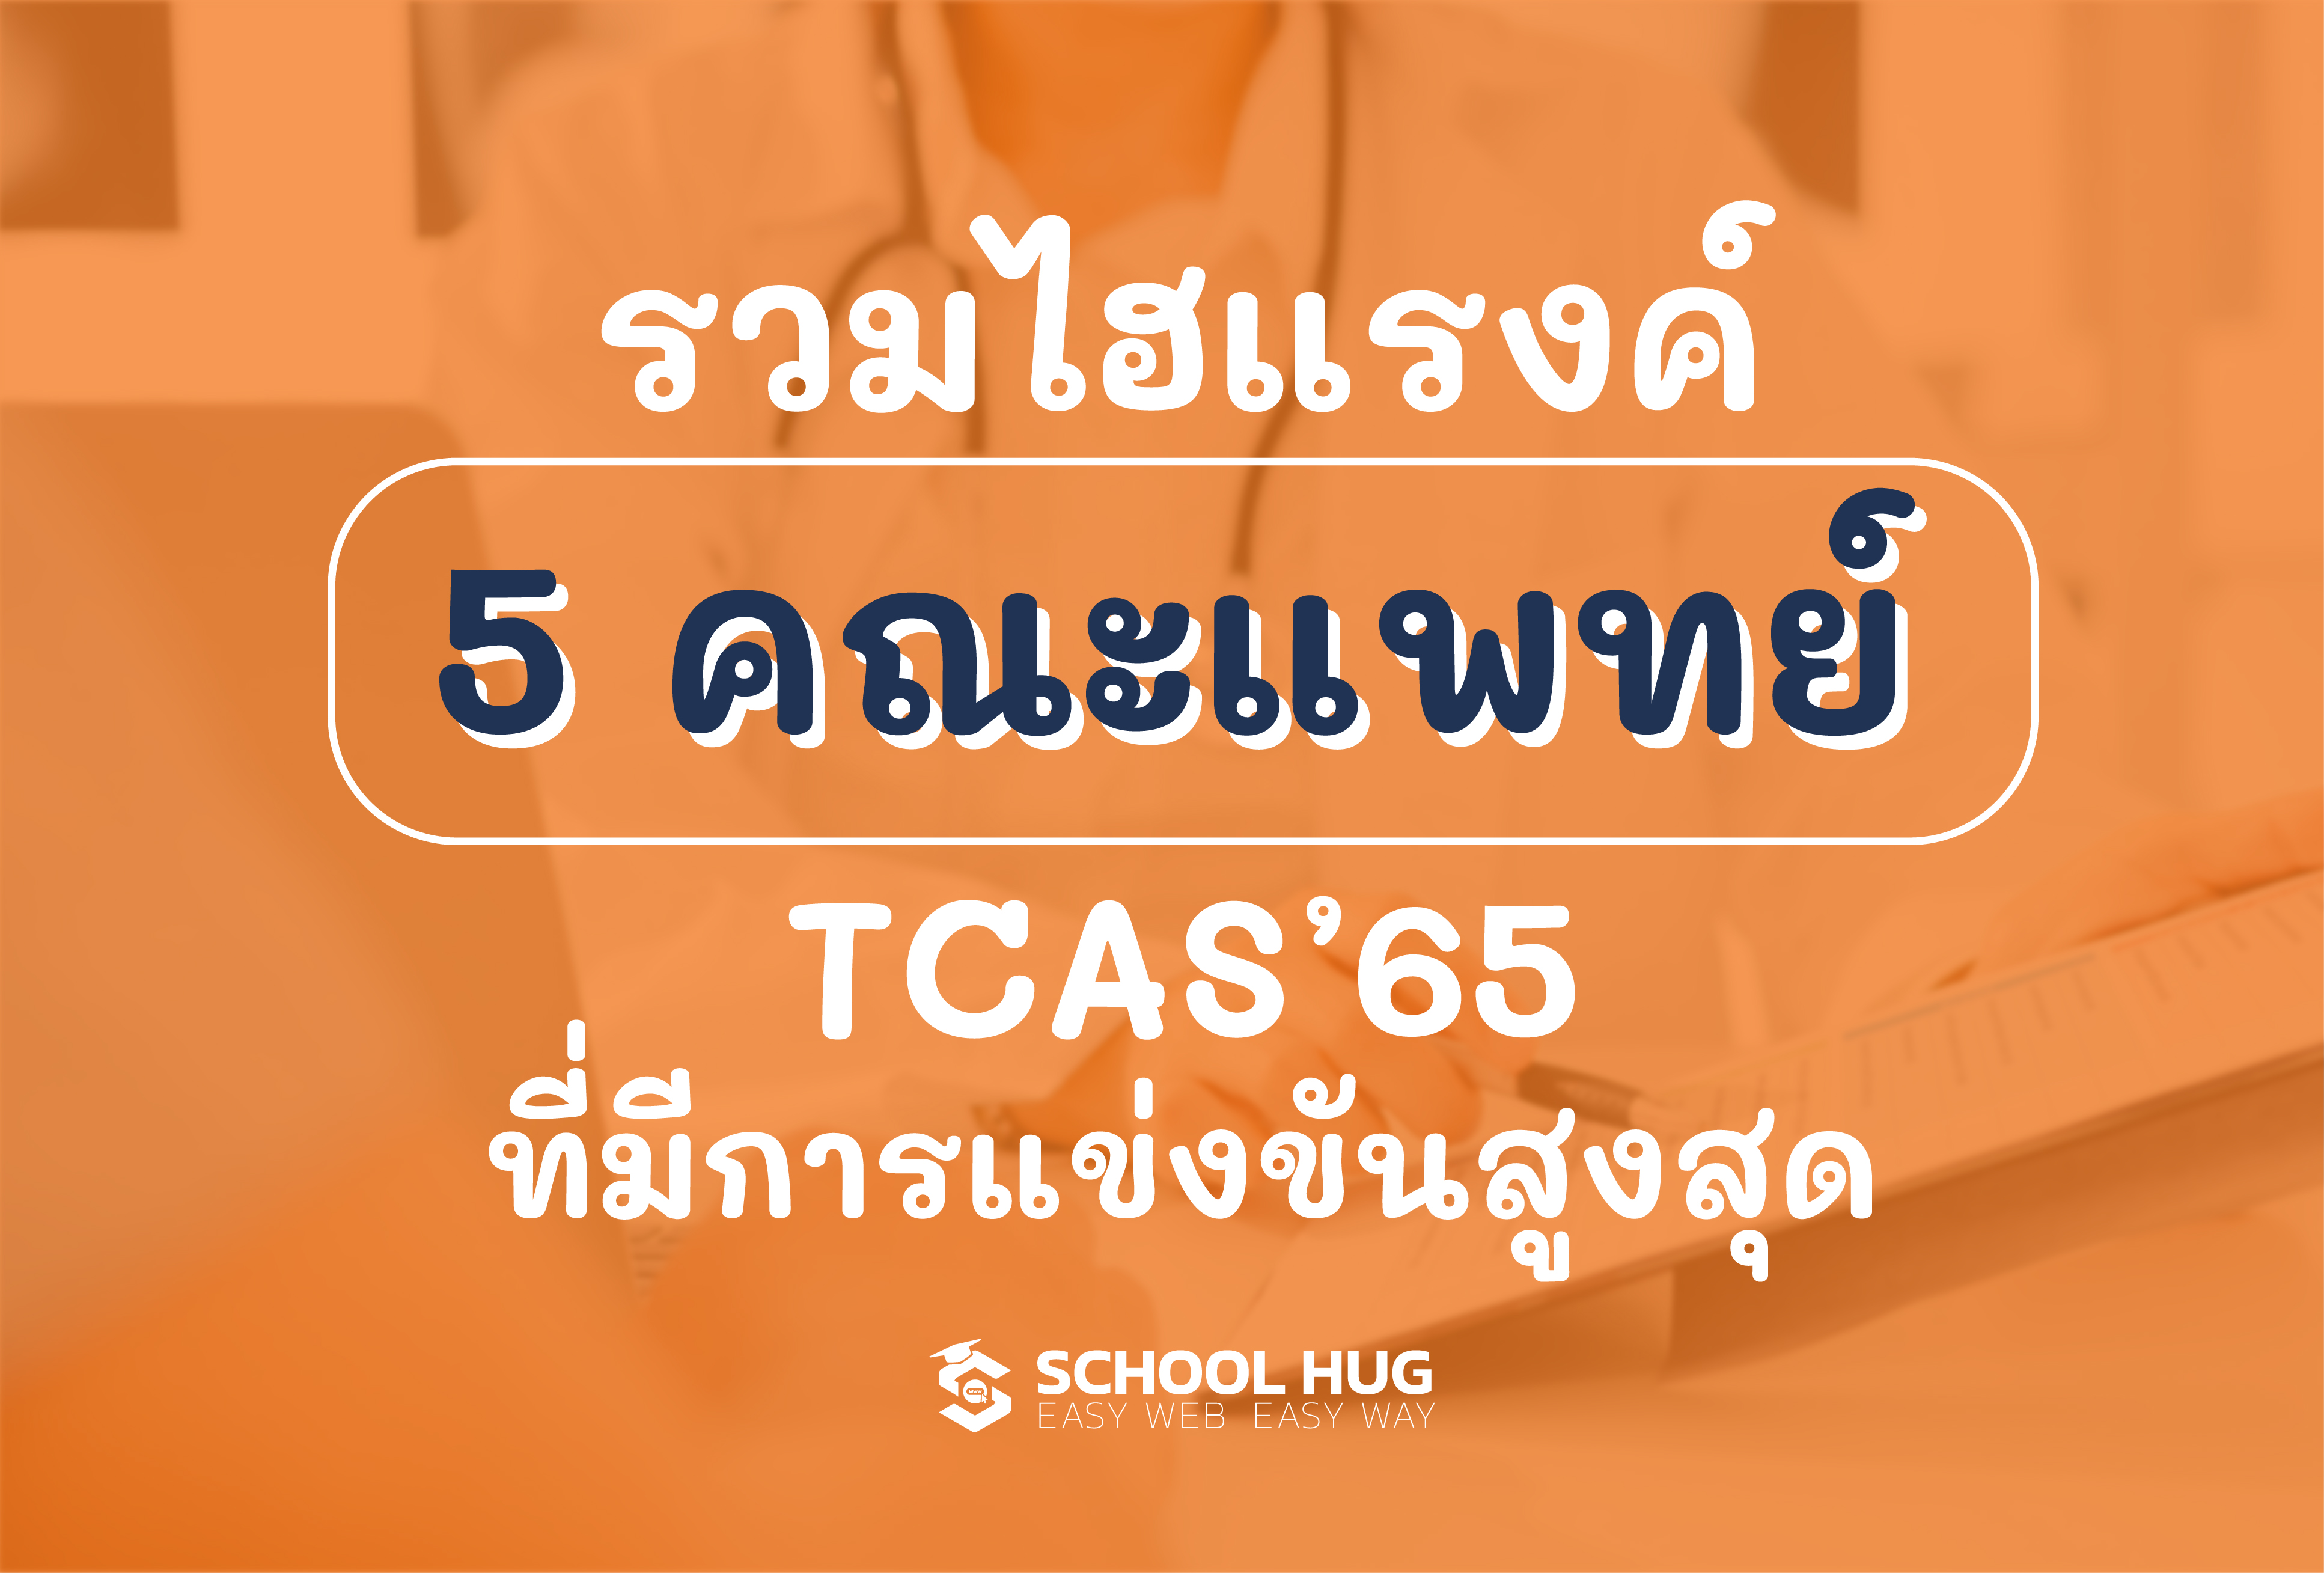 5 คณะแพทย์ TCAS65 ที่มีการแข่ง ...